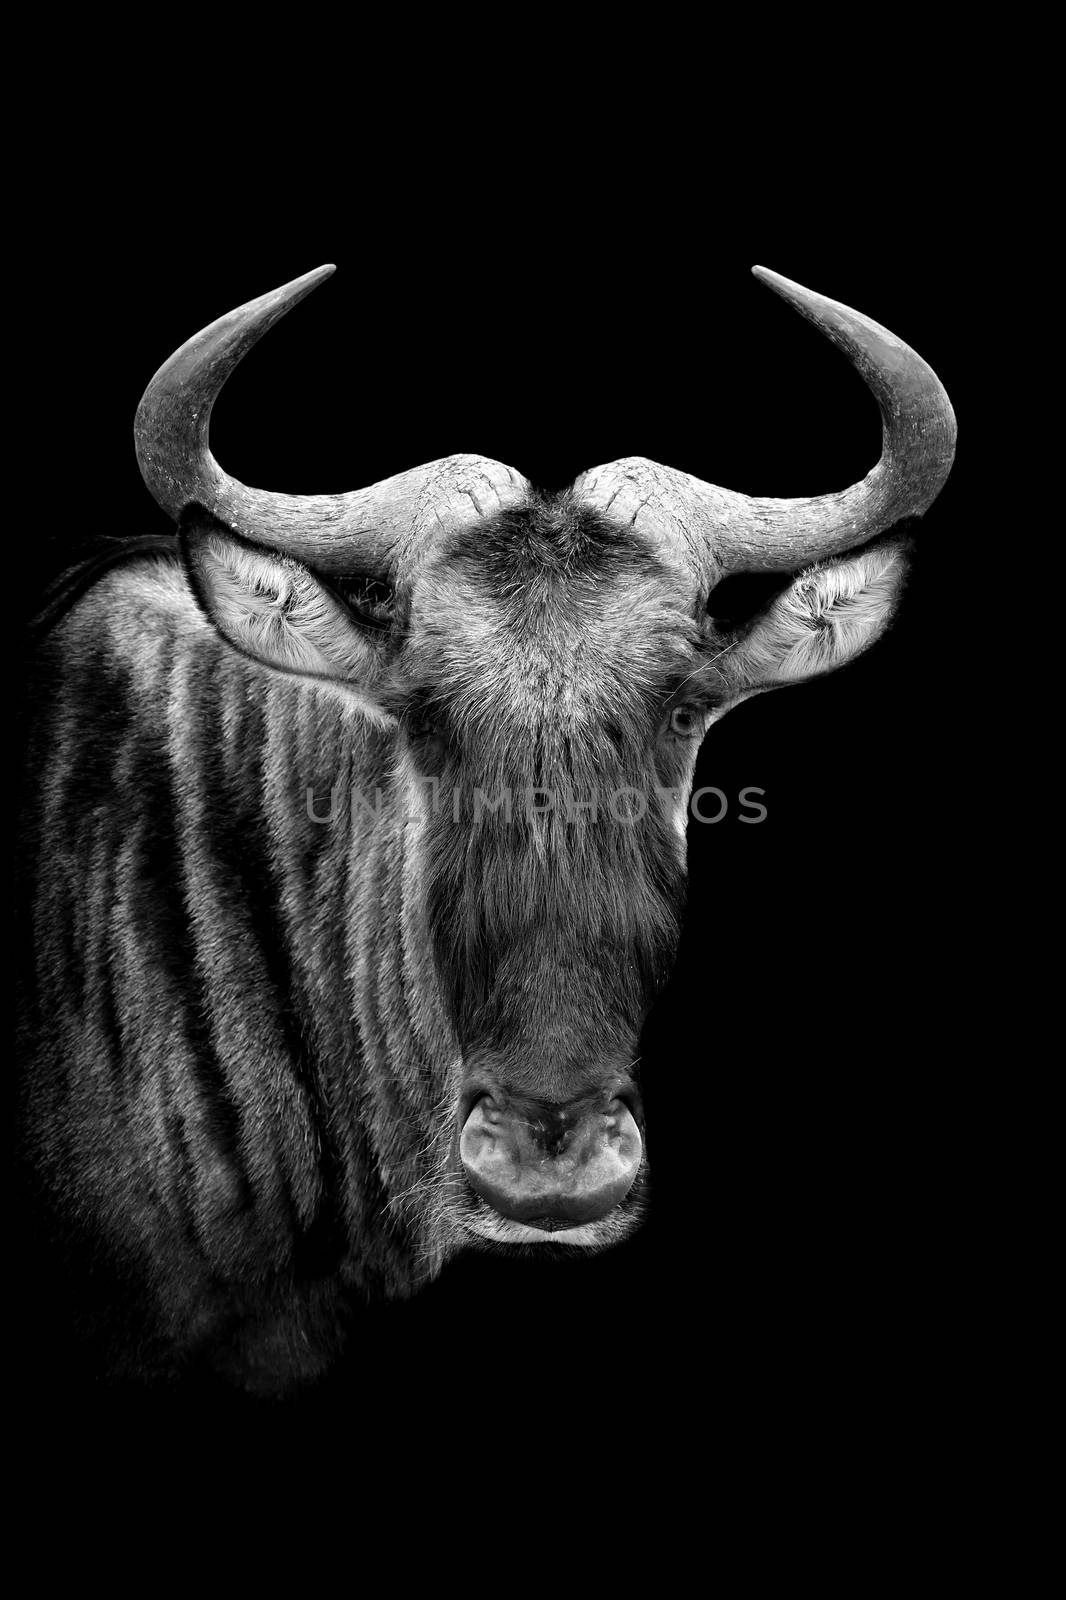 Wildebeest on dark background. Black and white image